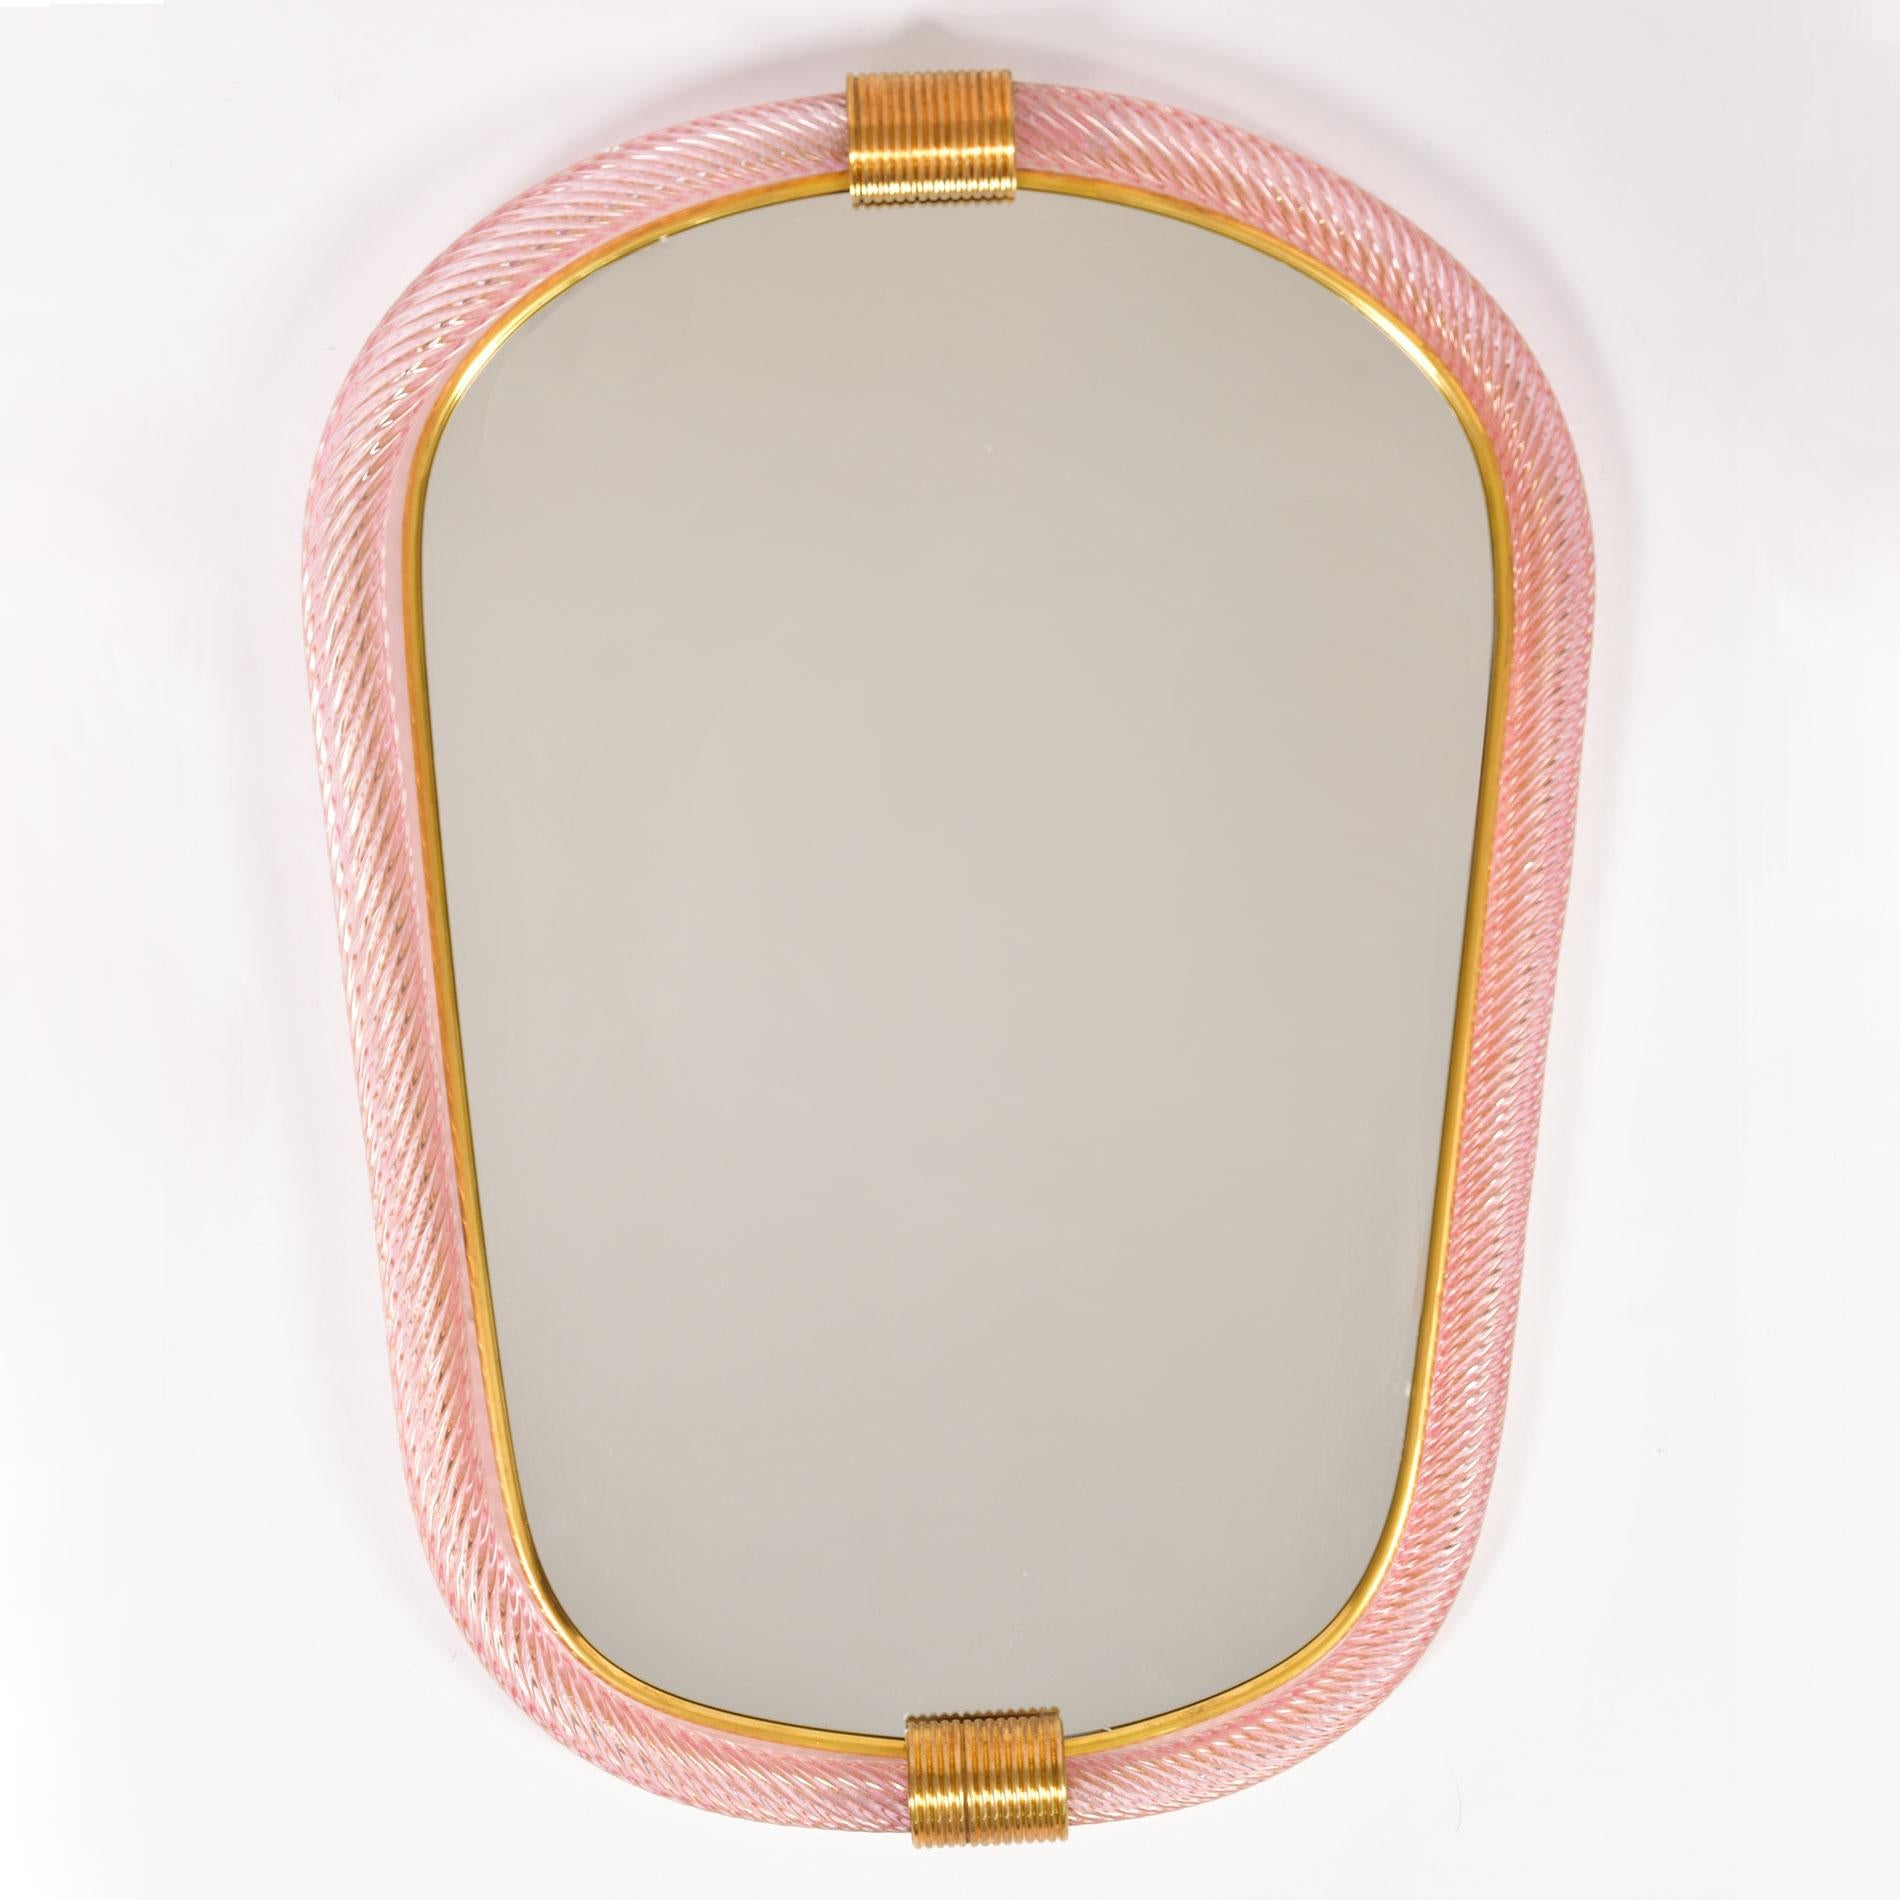 Miroir eliptique en verre de Murano soufflé à la main, rose pâle et moucheté d'or, avec deux fermoirs cannelés en laiton en haut et en bas, le bord intérieur bordé d'un mince filet en laiton.

Également disponible en bleu pâle.

Délai de 8 à 9